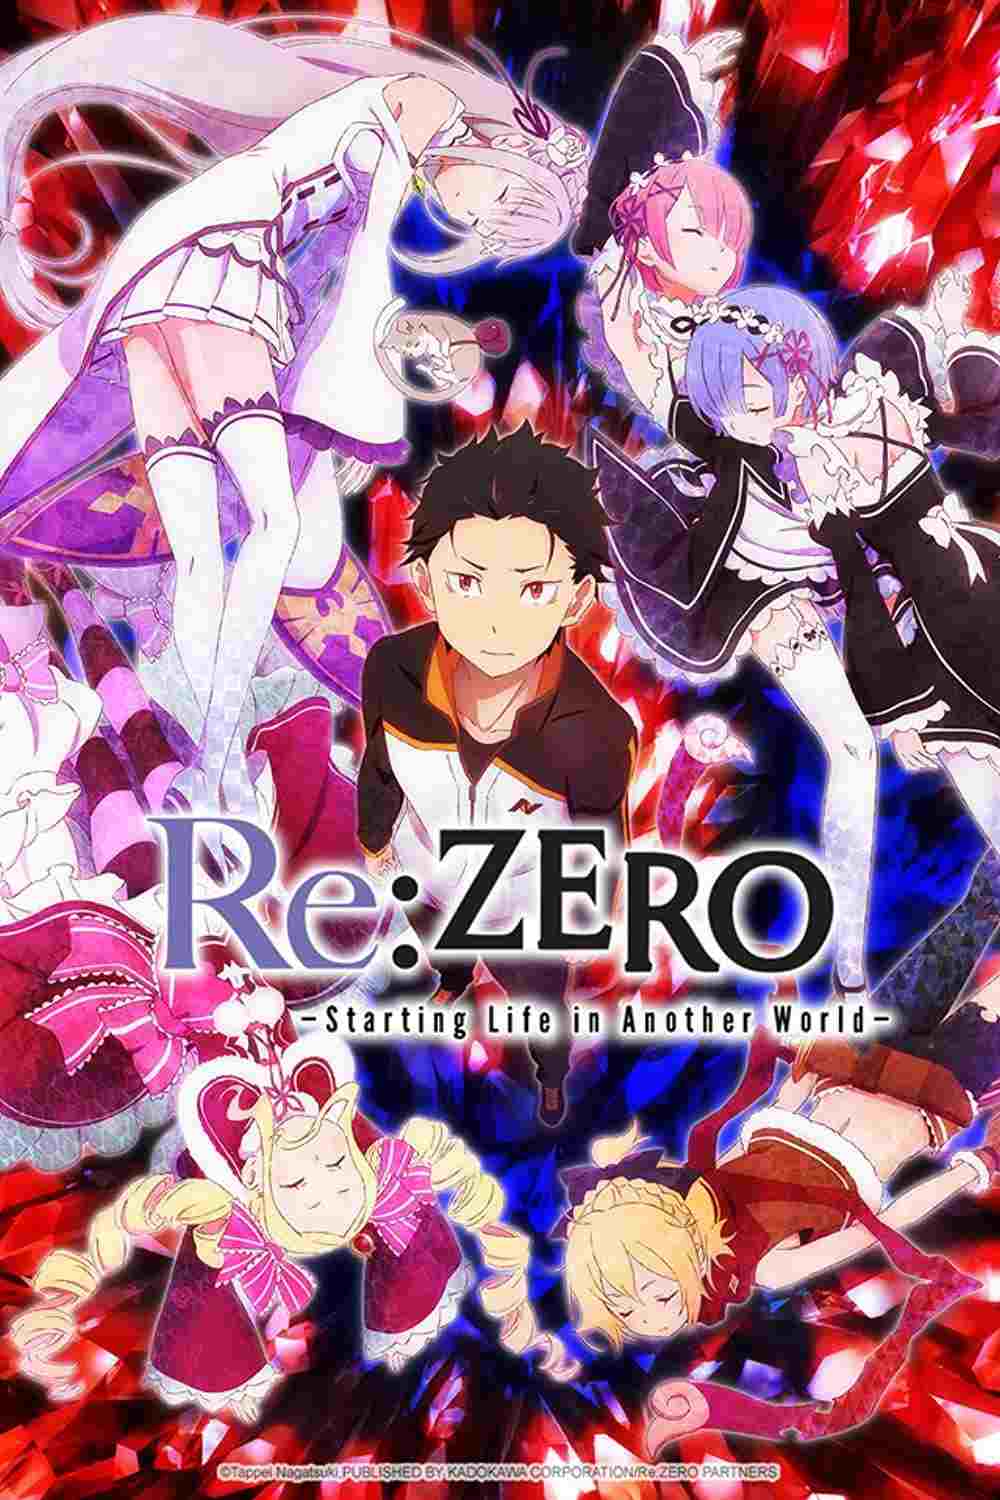 anime similar to re zero